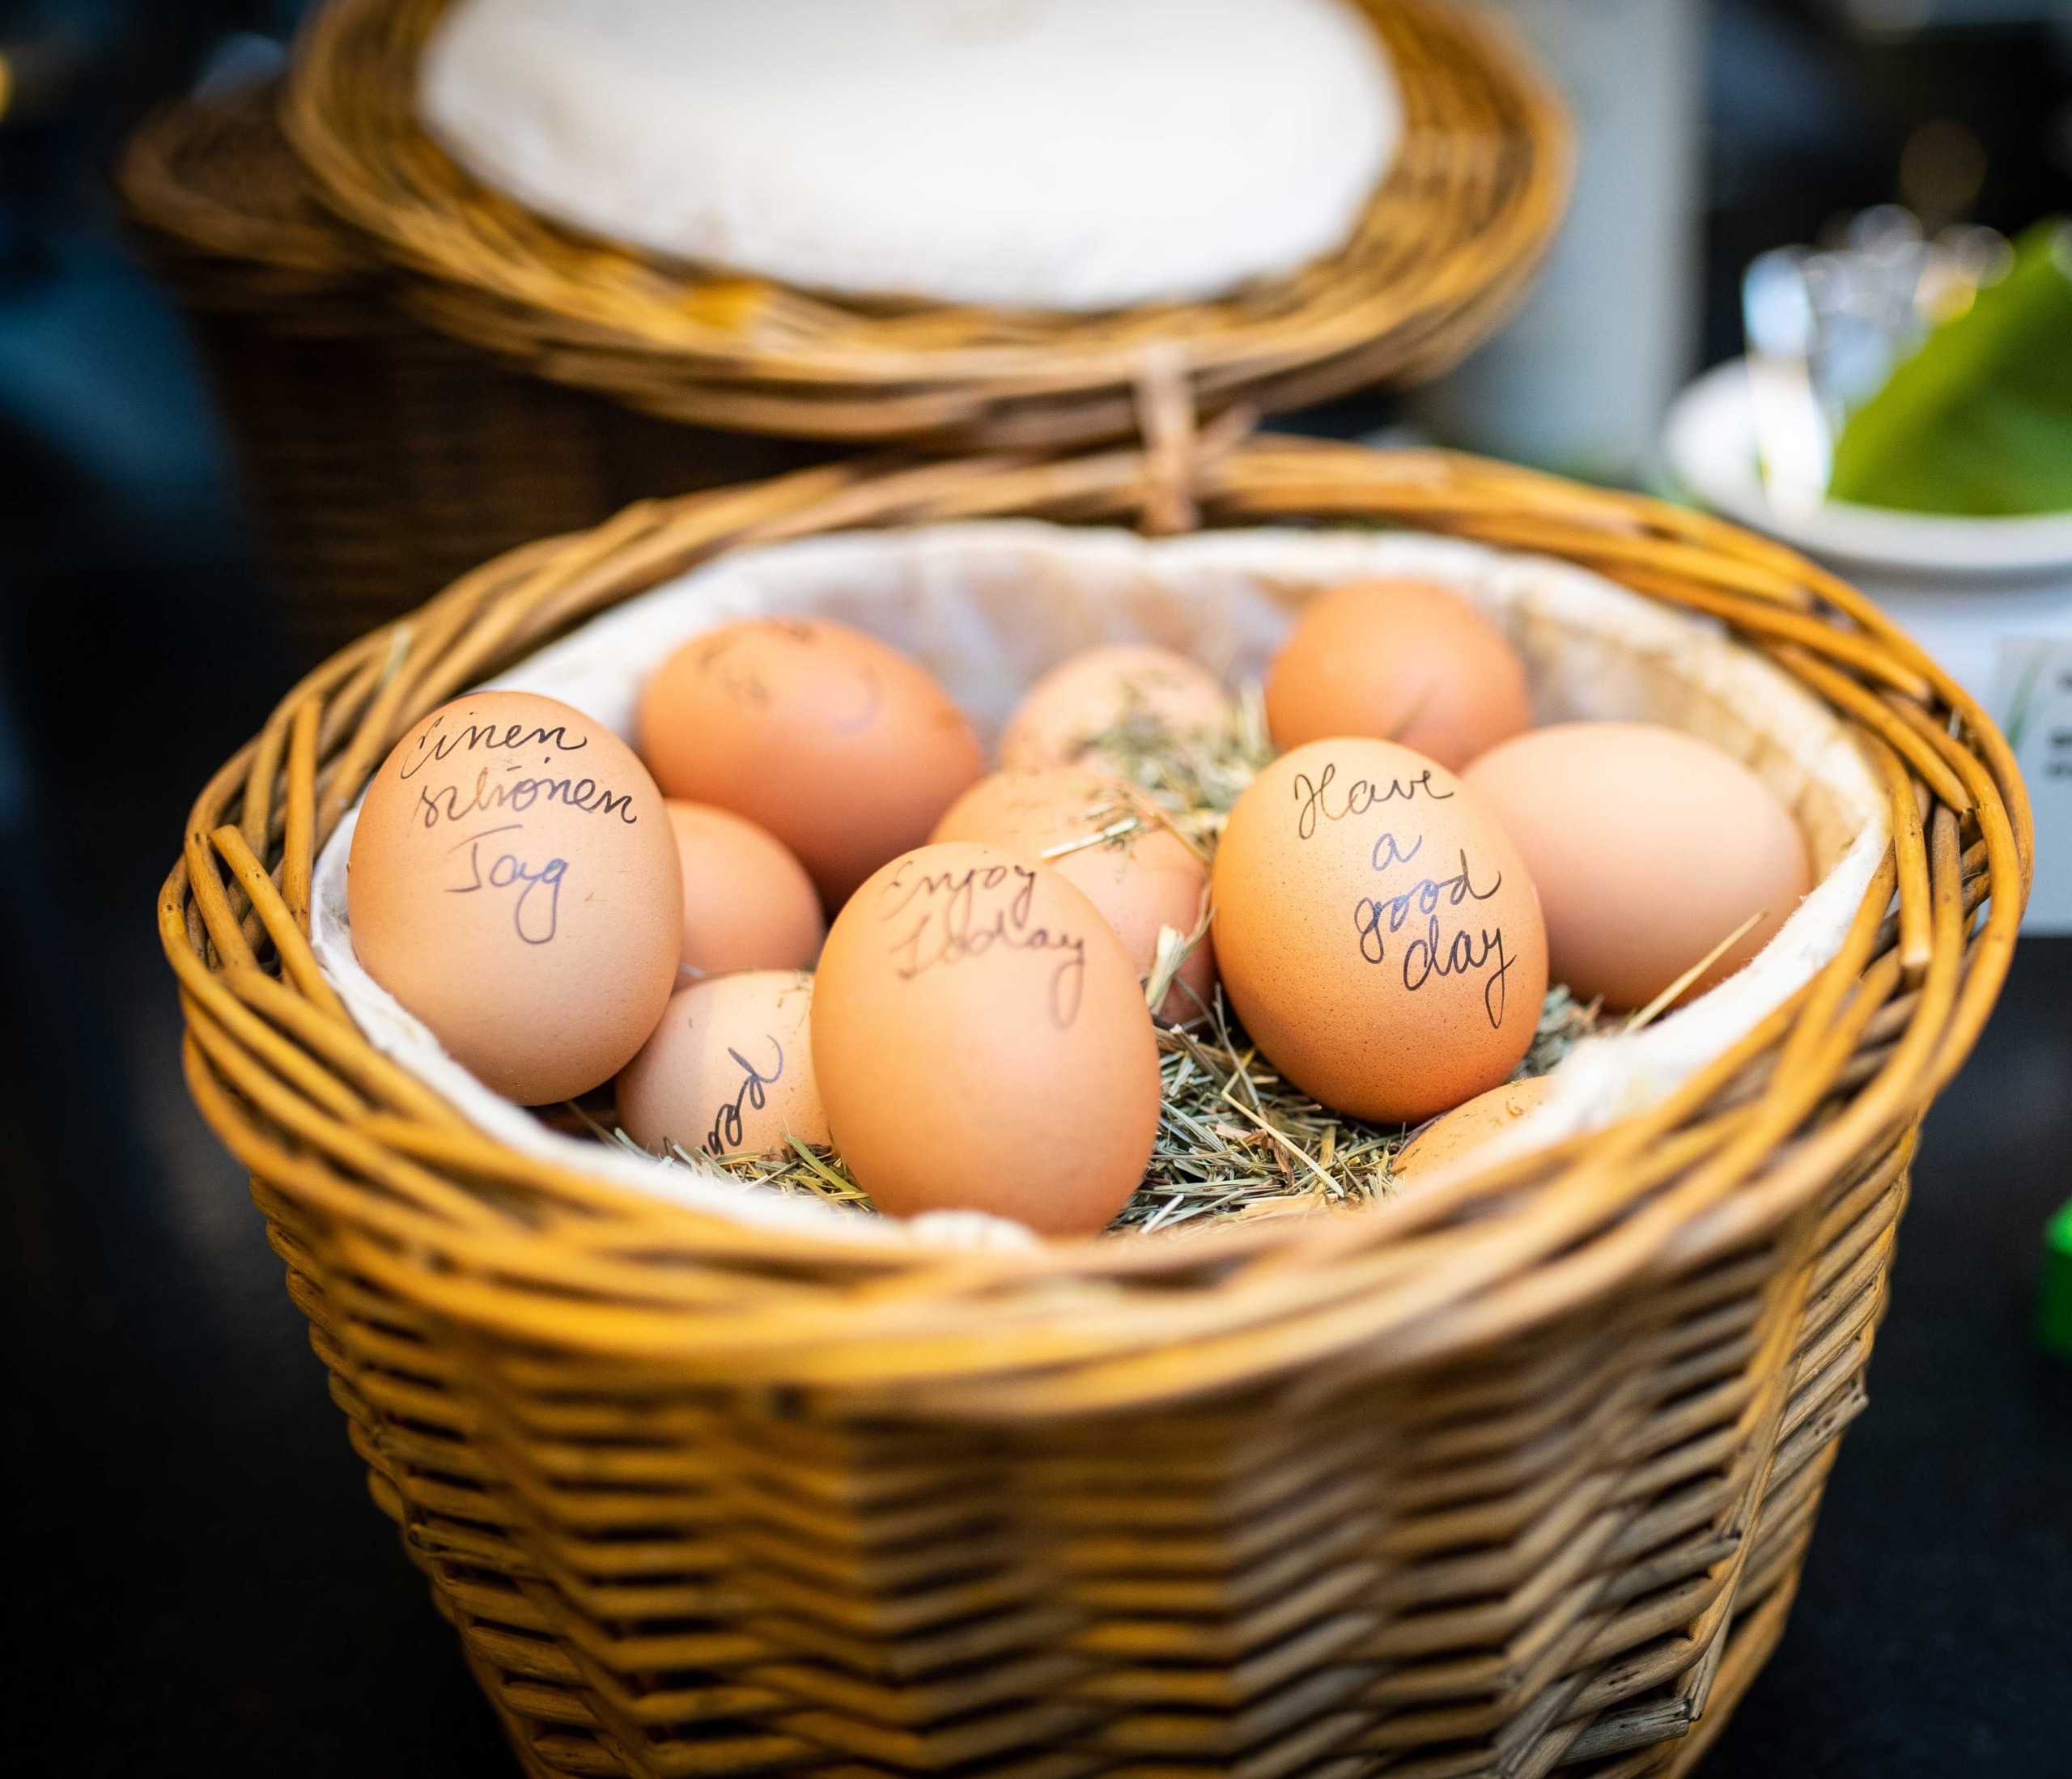 Gekochte Eier liegen in einem Korb auf Heu und sind mit Wünschen für einen guten Tag beschriftet